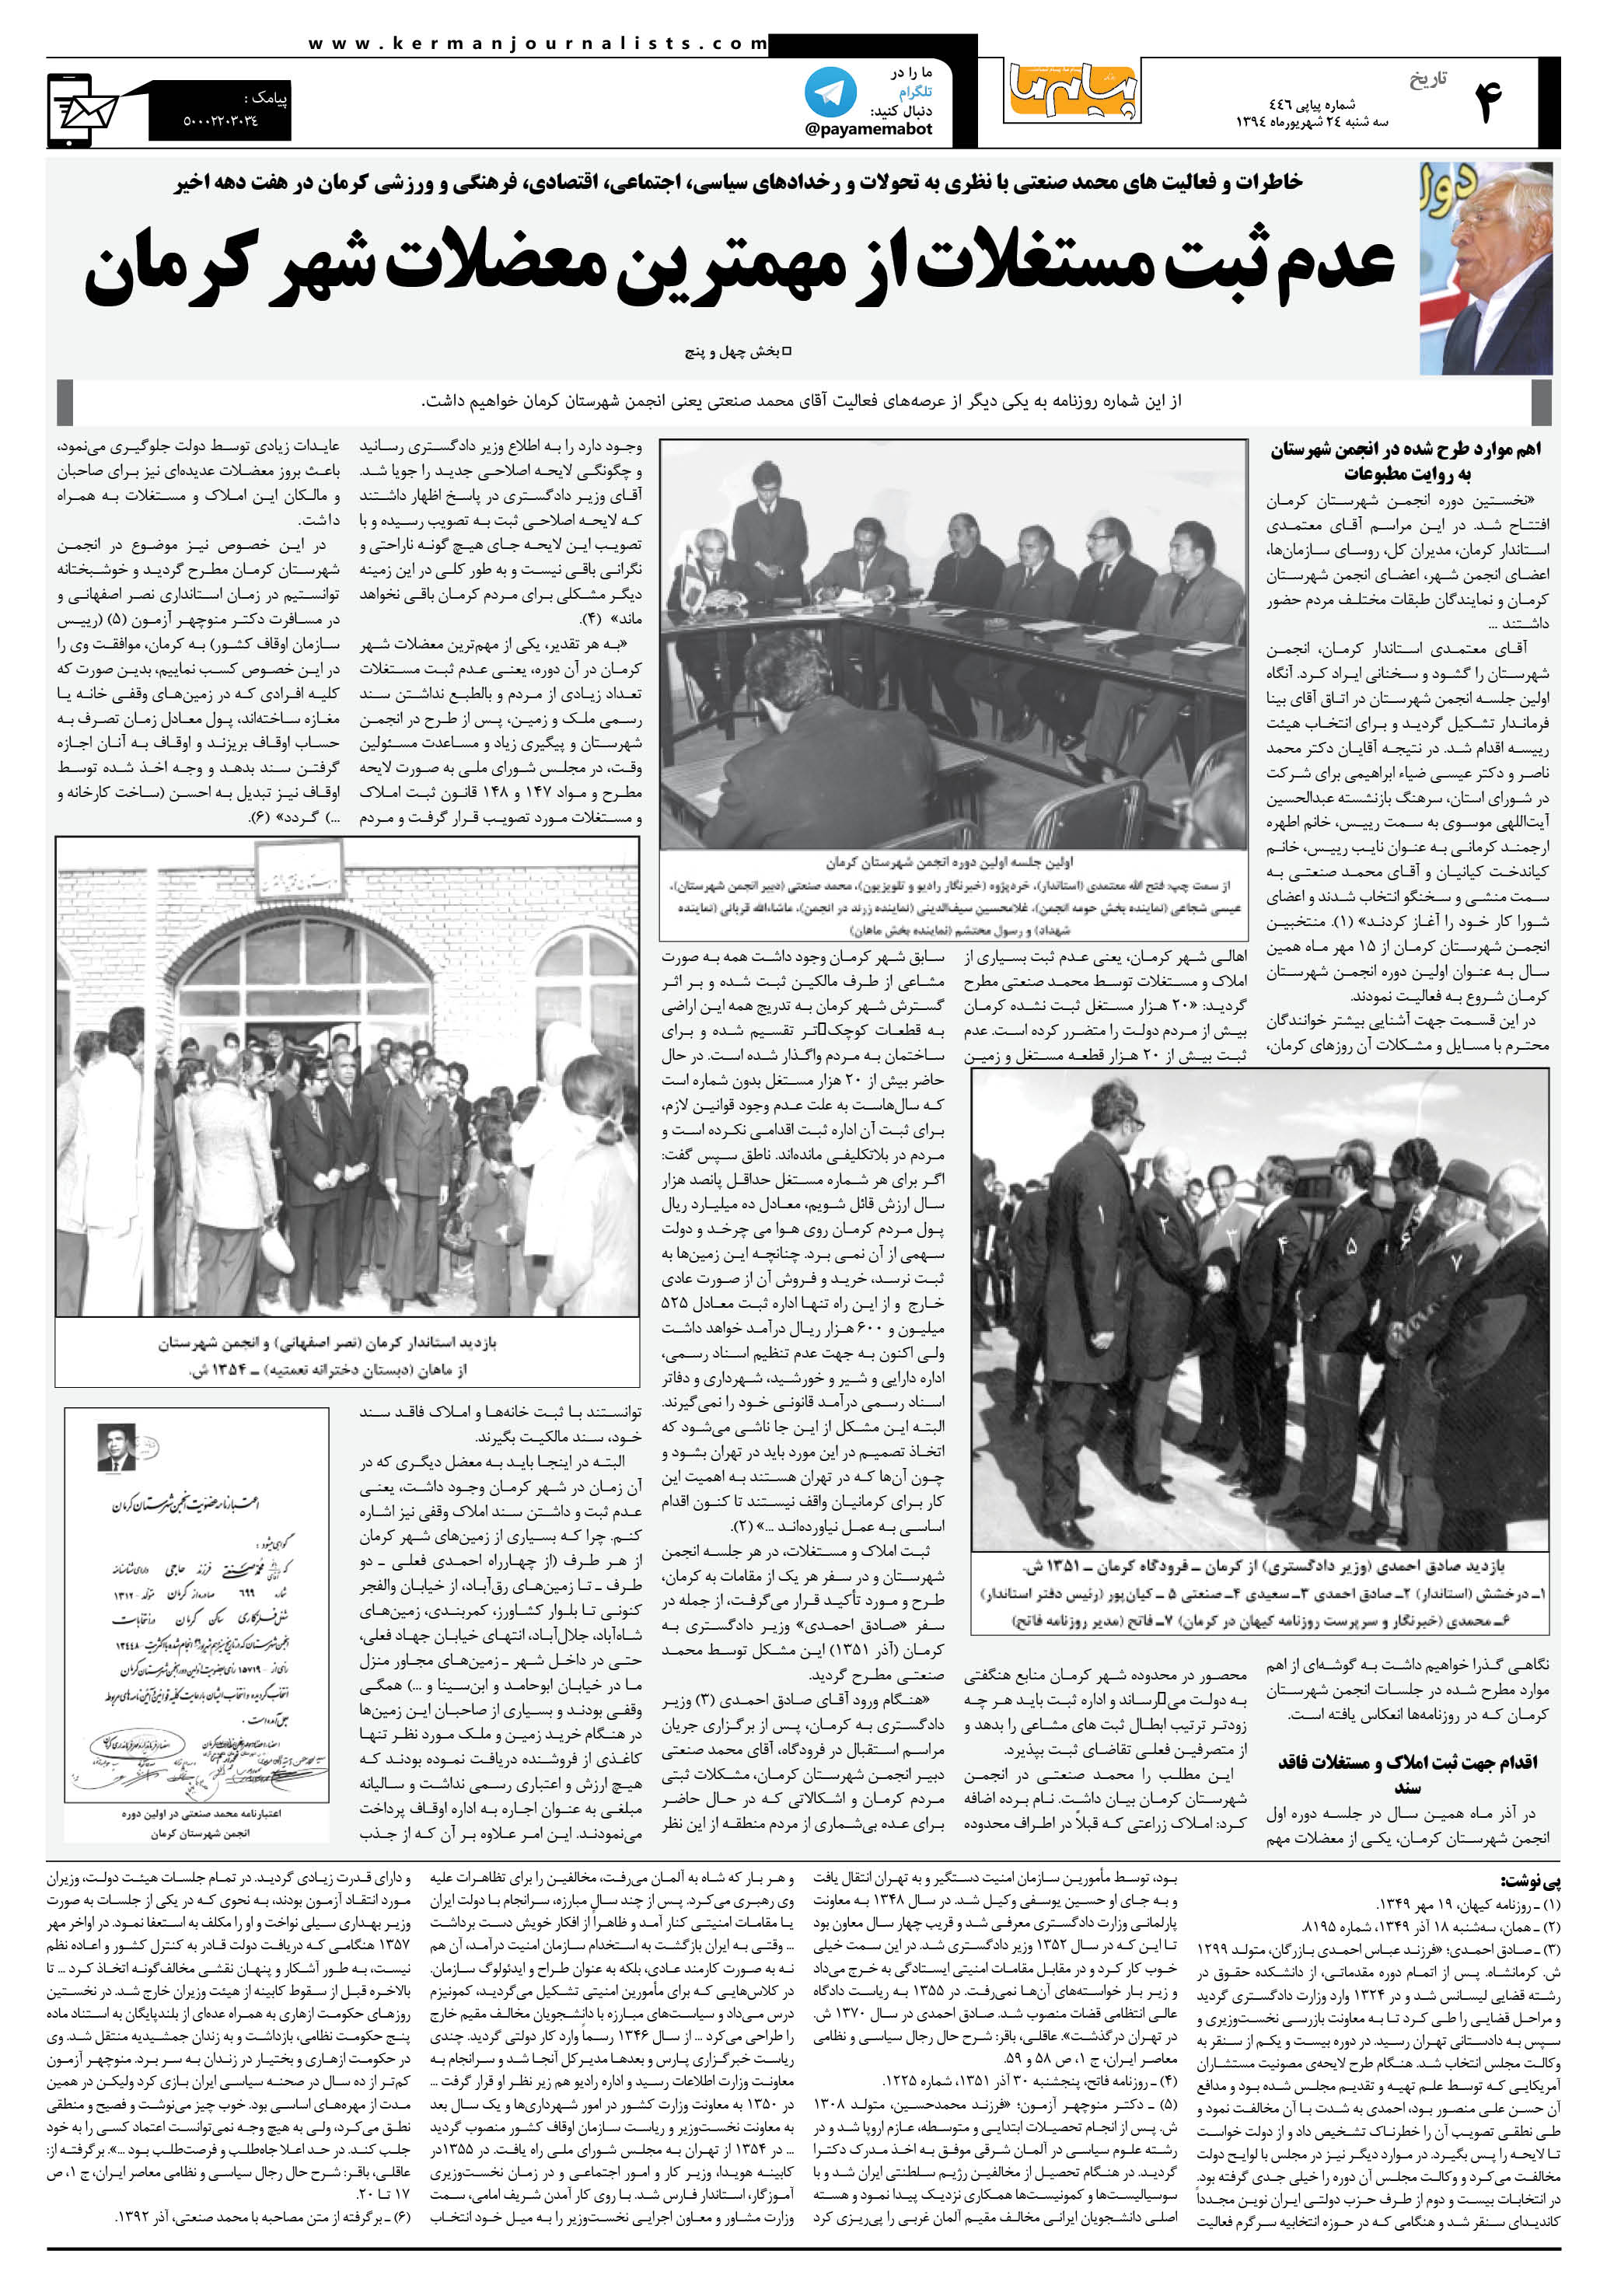 صفحه تاریخ شماره 446 روزنامه پیام ما